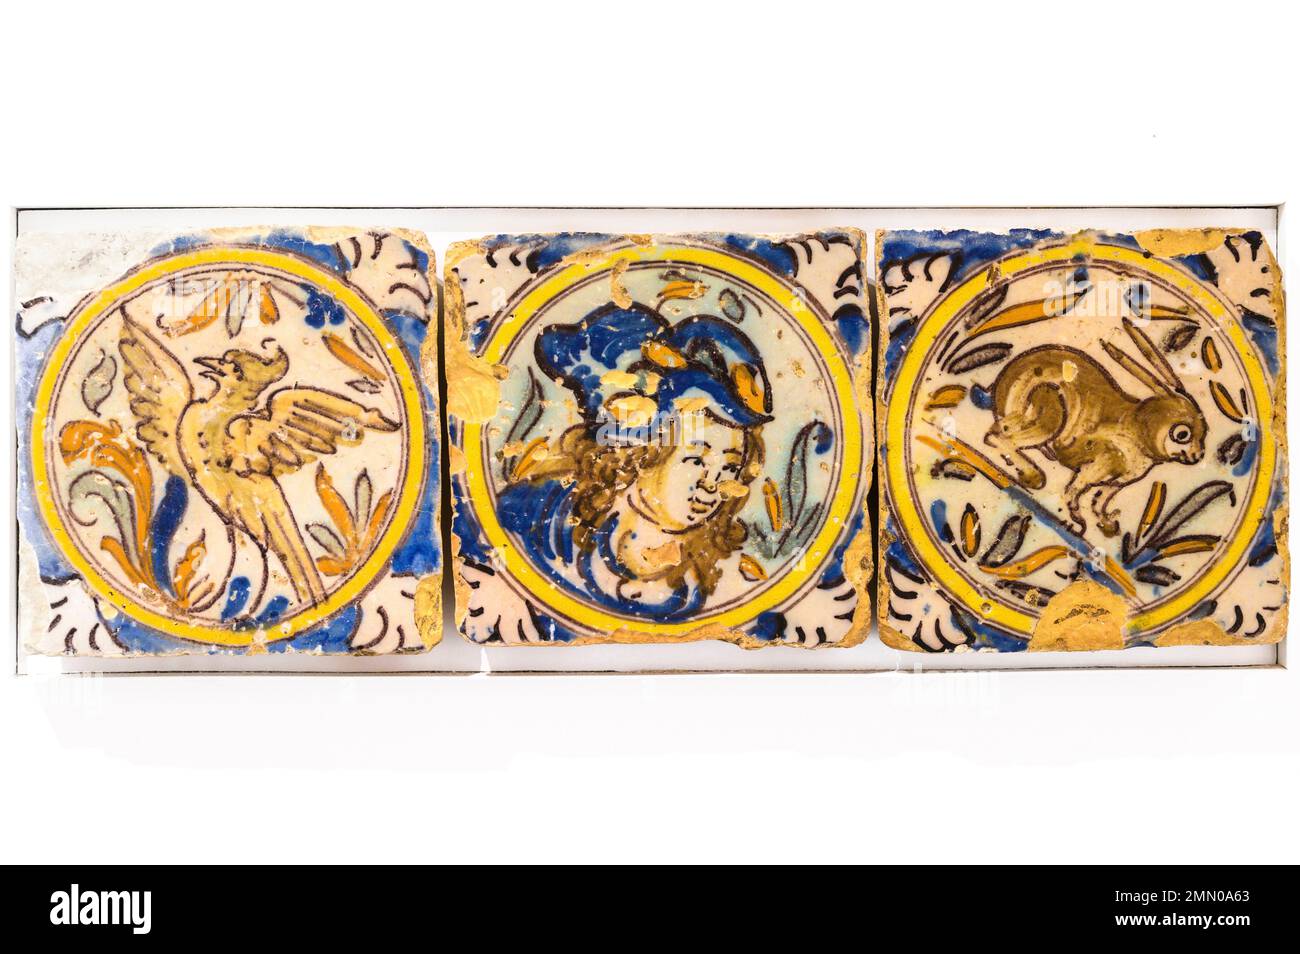 Portugal, région de l'Alentejo, ville d'Estremoz, Museuu Berardo Estremoz, musée de la céramique au Palais Tocha, céramique du 17th siècle Banque D'Images